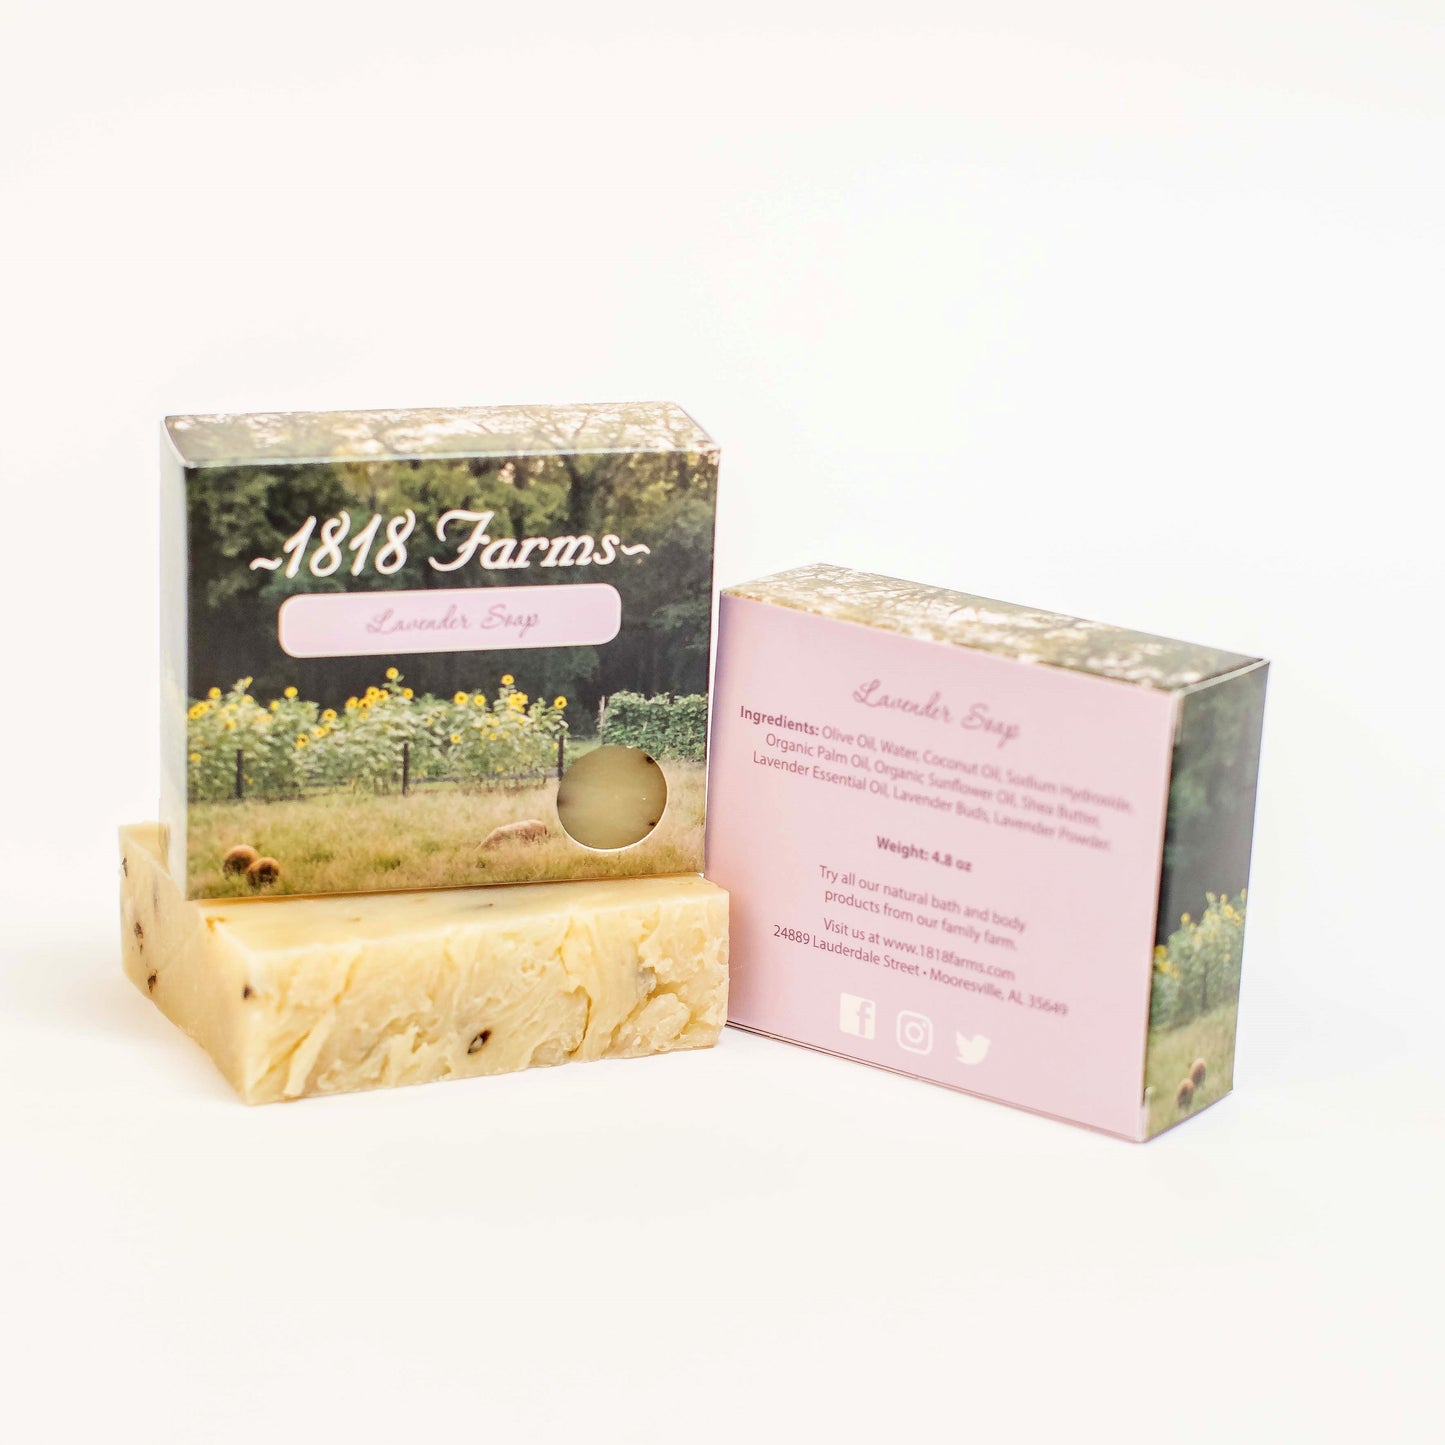 Flower Lover's Gift Box Gift Basket 1818 Farms   